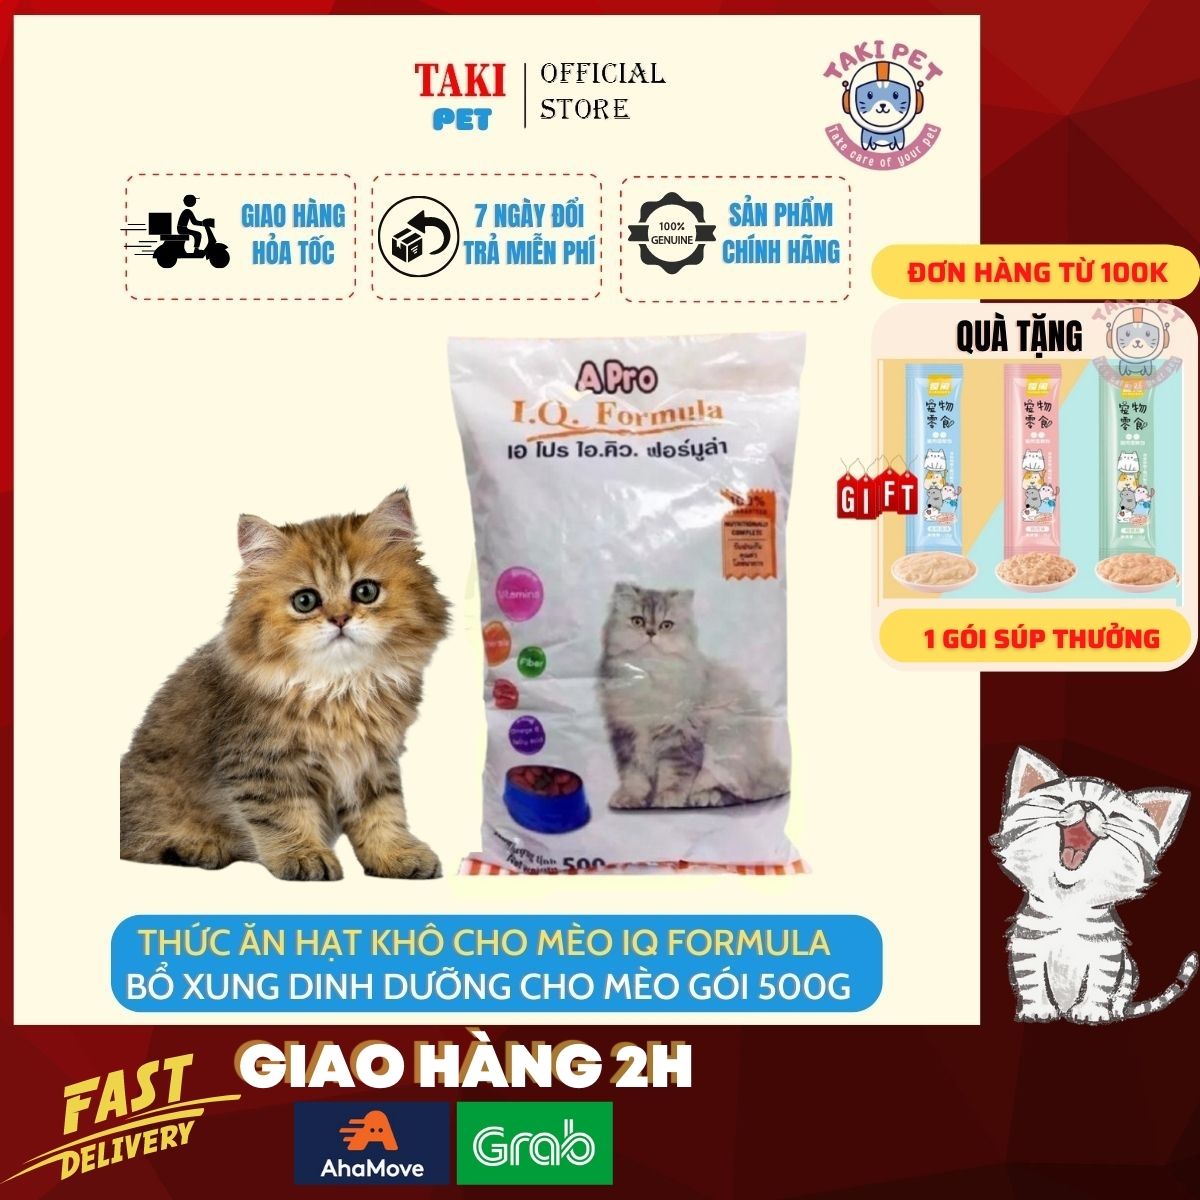 Thức ăn hạt khô cho mèo Apro IQ Formula 500g, hajt dành cho mèo